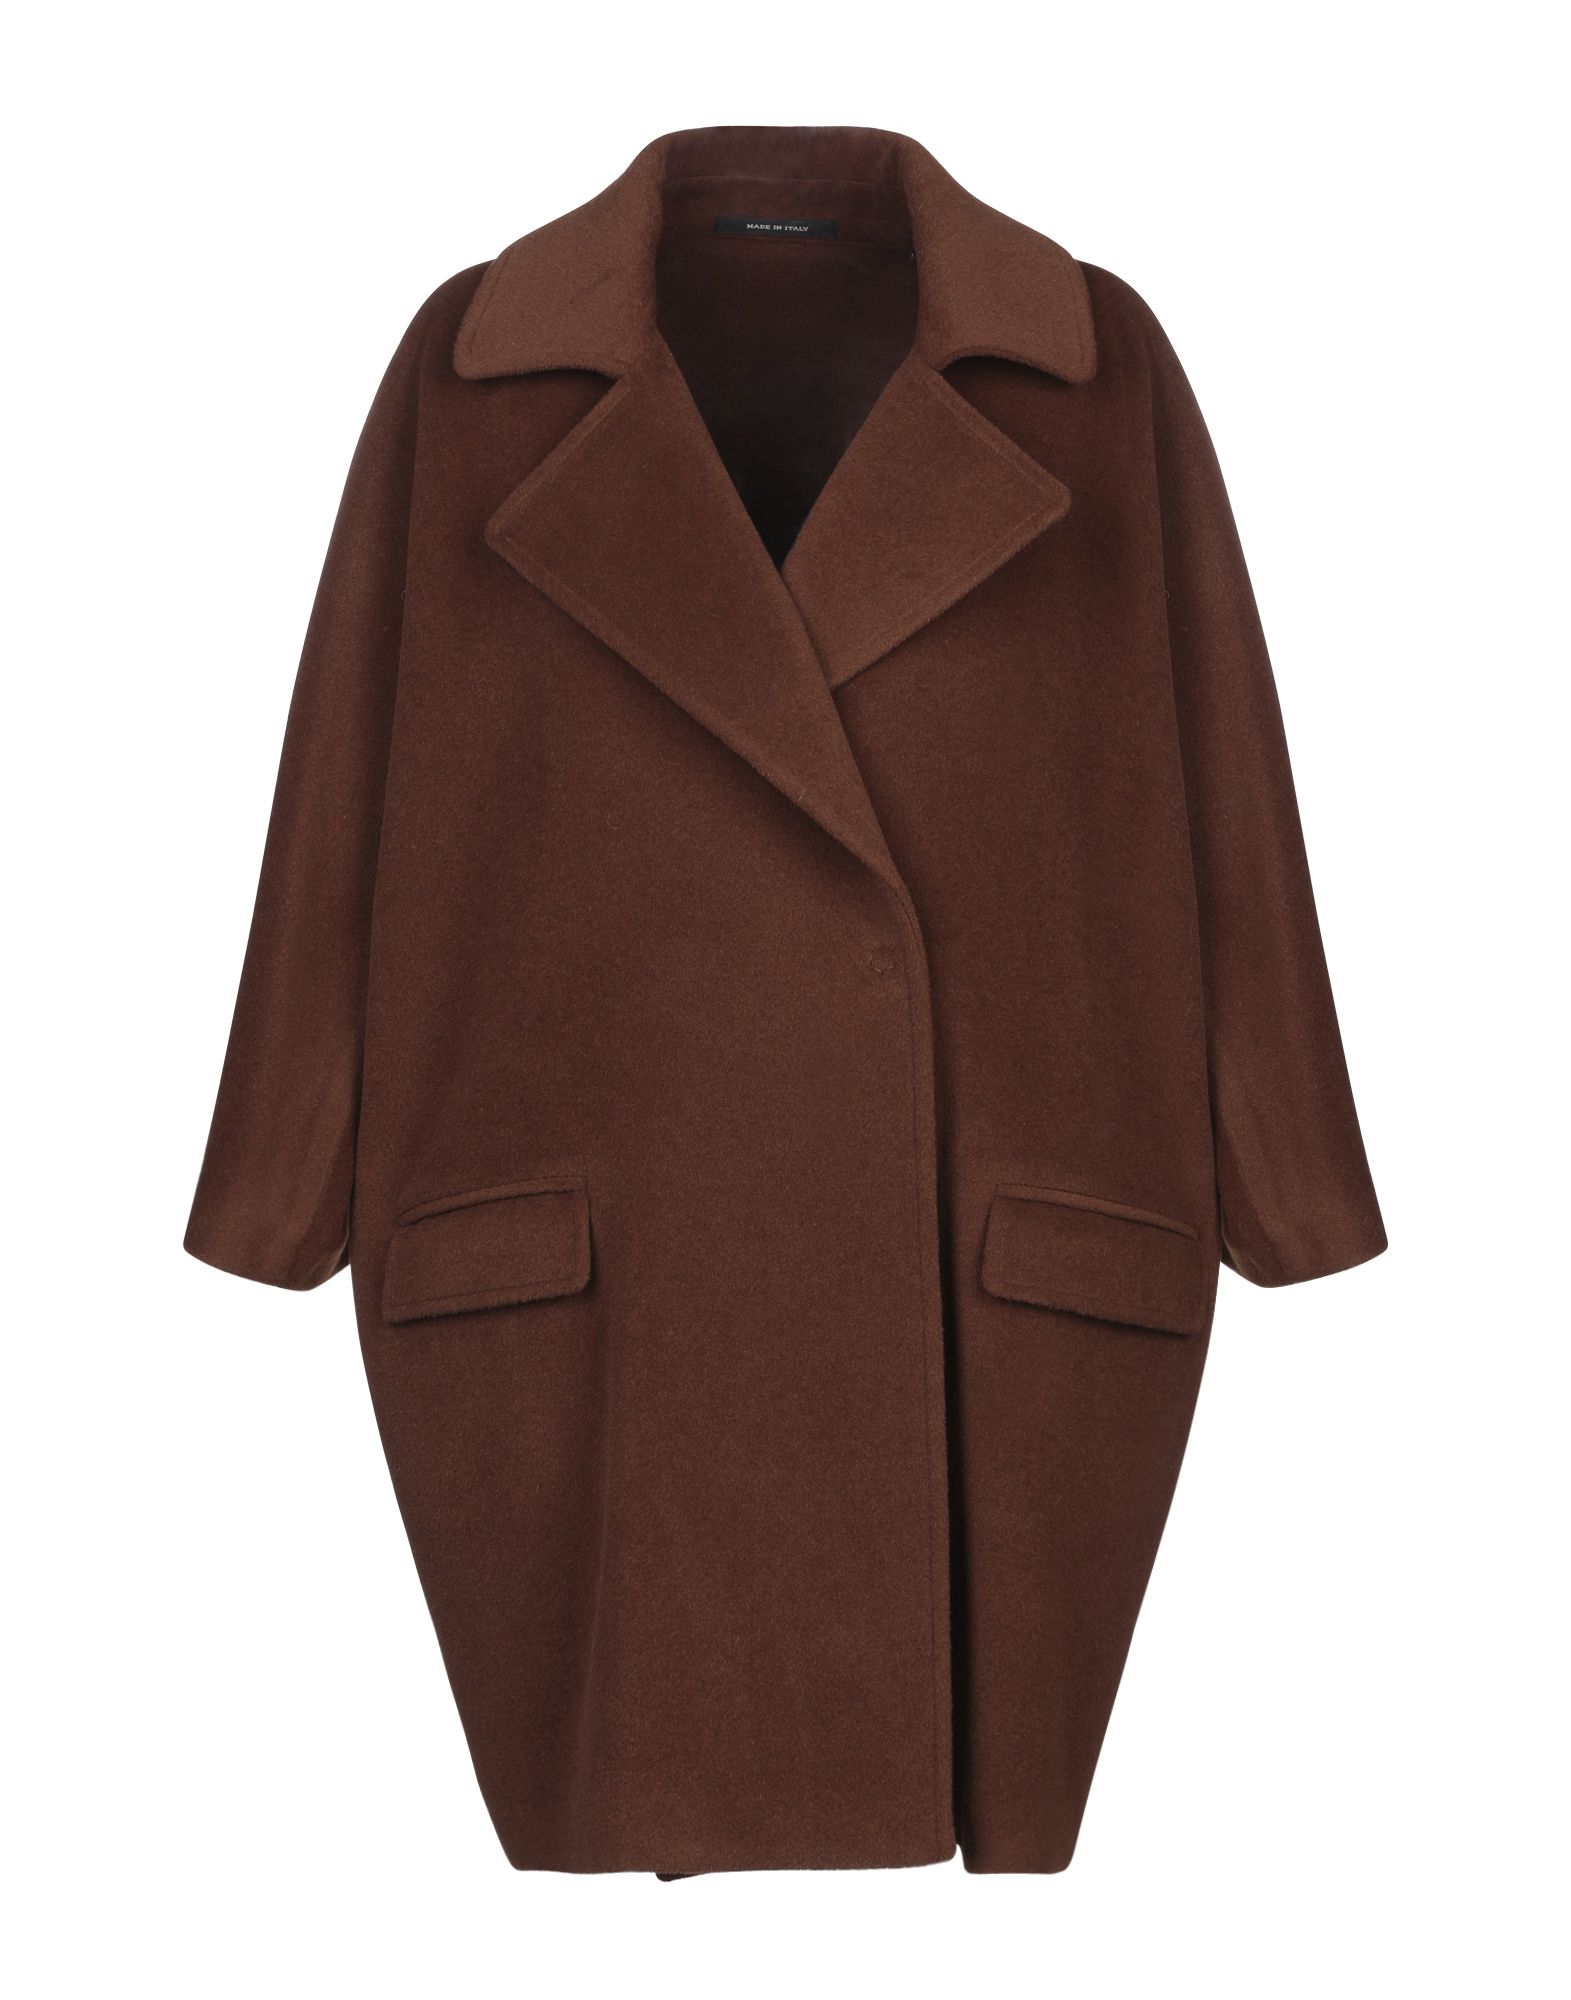 Купить коричневое пальто. Коричневое пальто. Пальто пиджак коричневое. Темно коричневое пальто классическое свингер. Коричневое пальто кожа без модели.